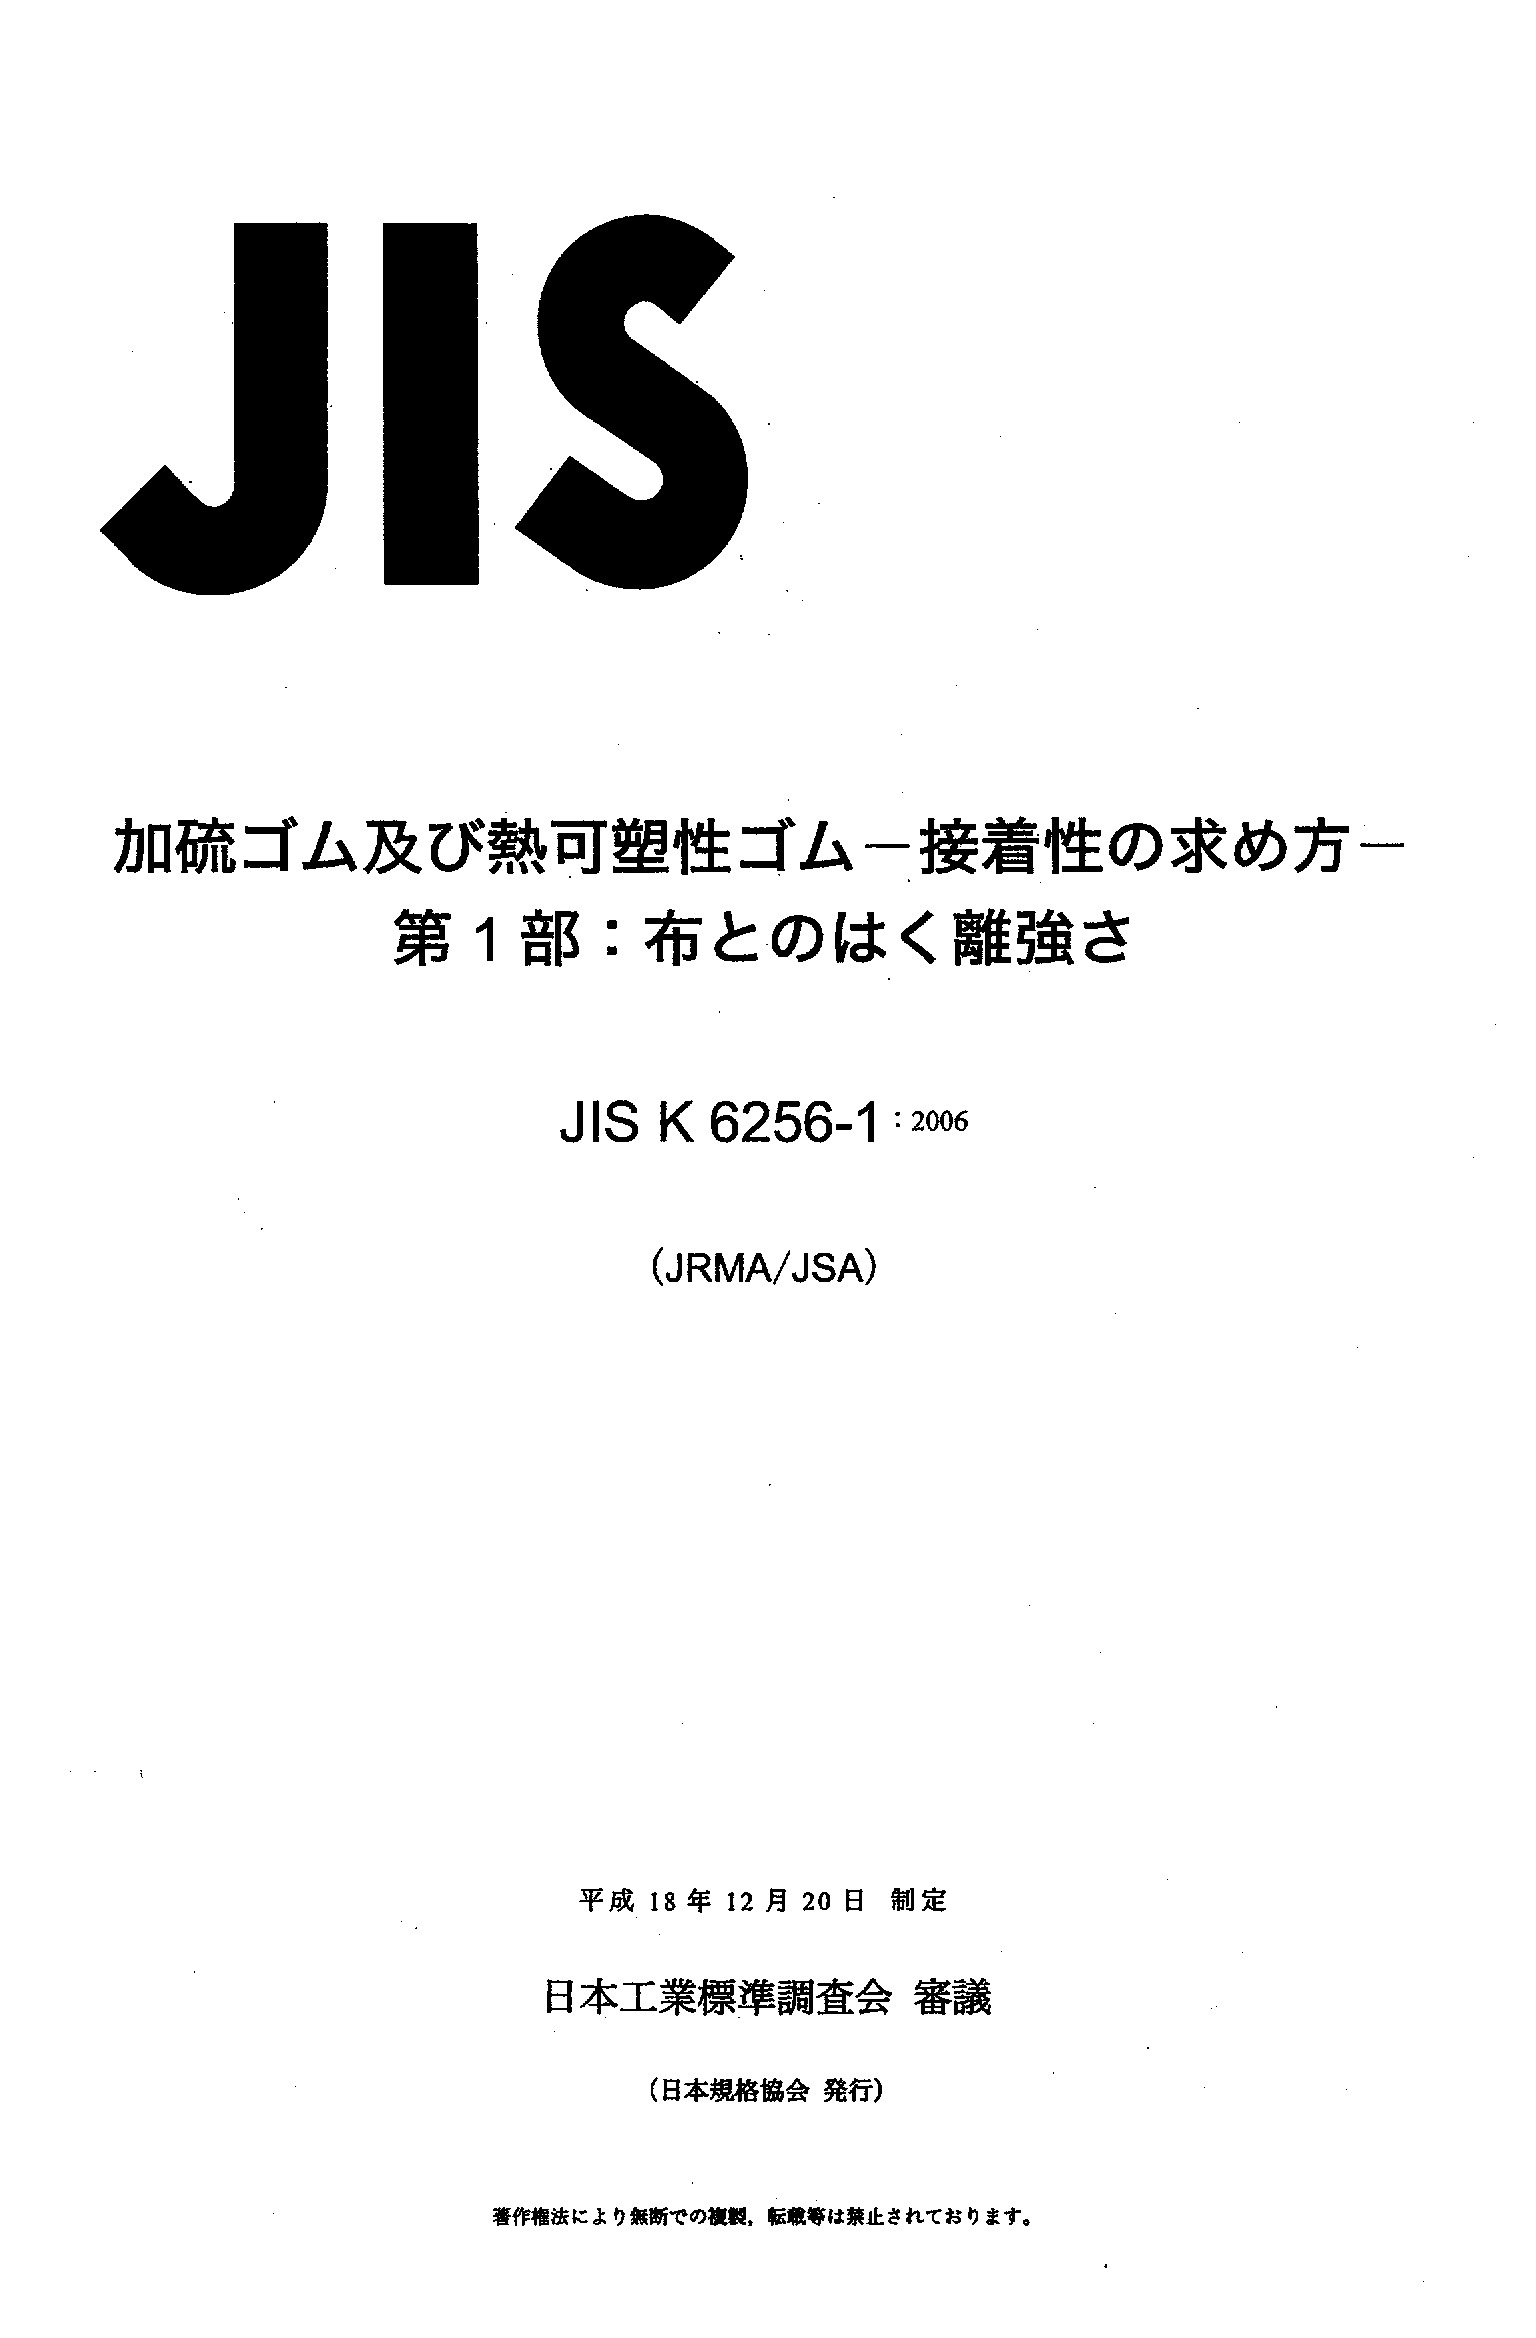 JIS K 6256-1:2006封面图